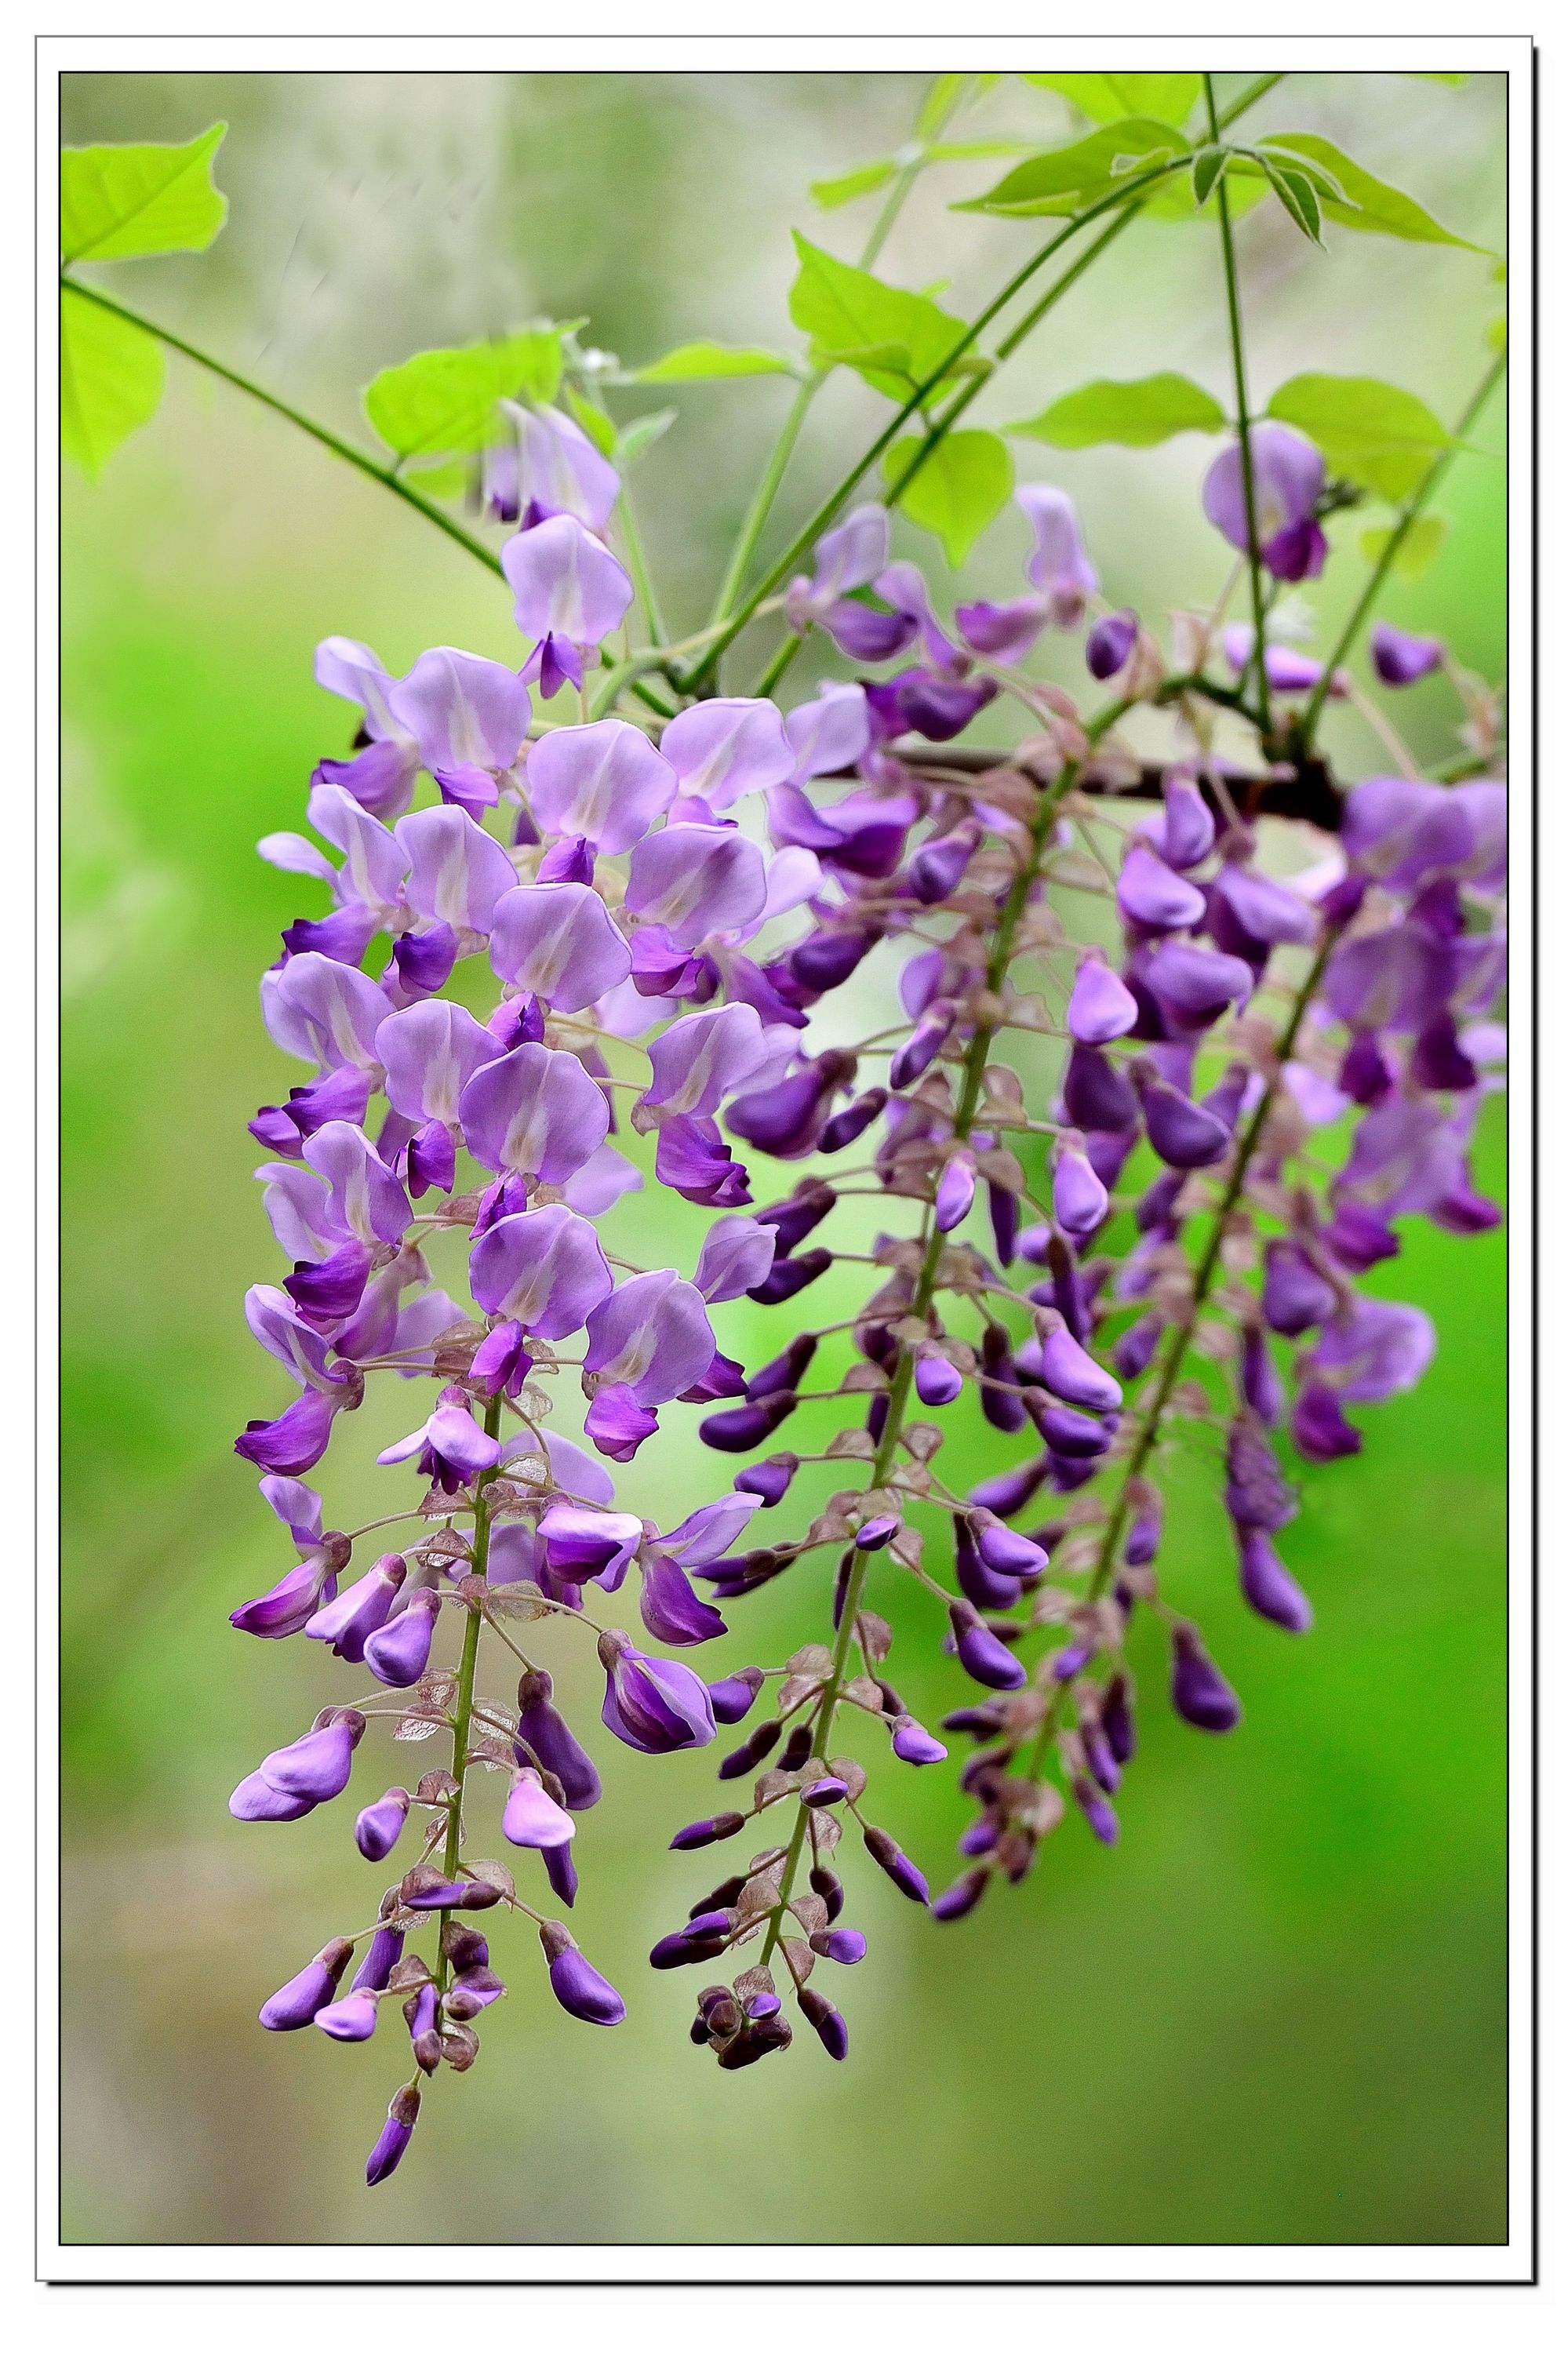 紫藤花正盛开，爱赏花、拍花的朋友莫错过|紫藤花|特写|背景_新浪网